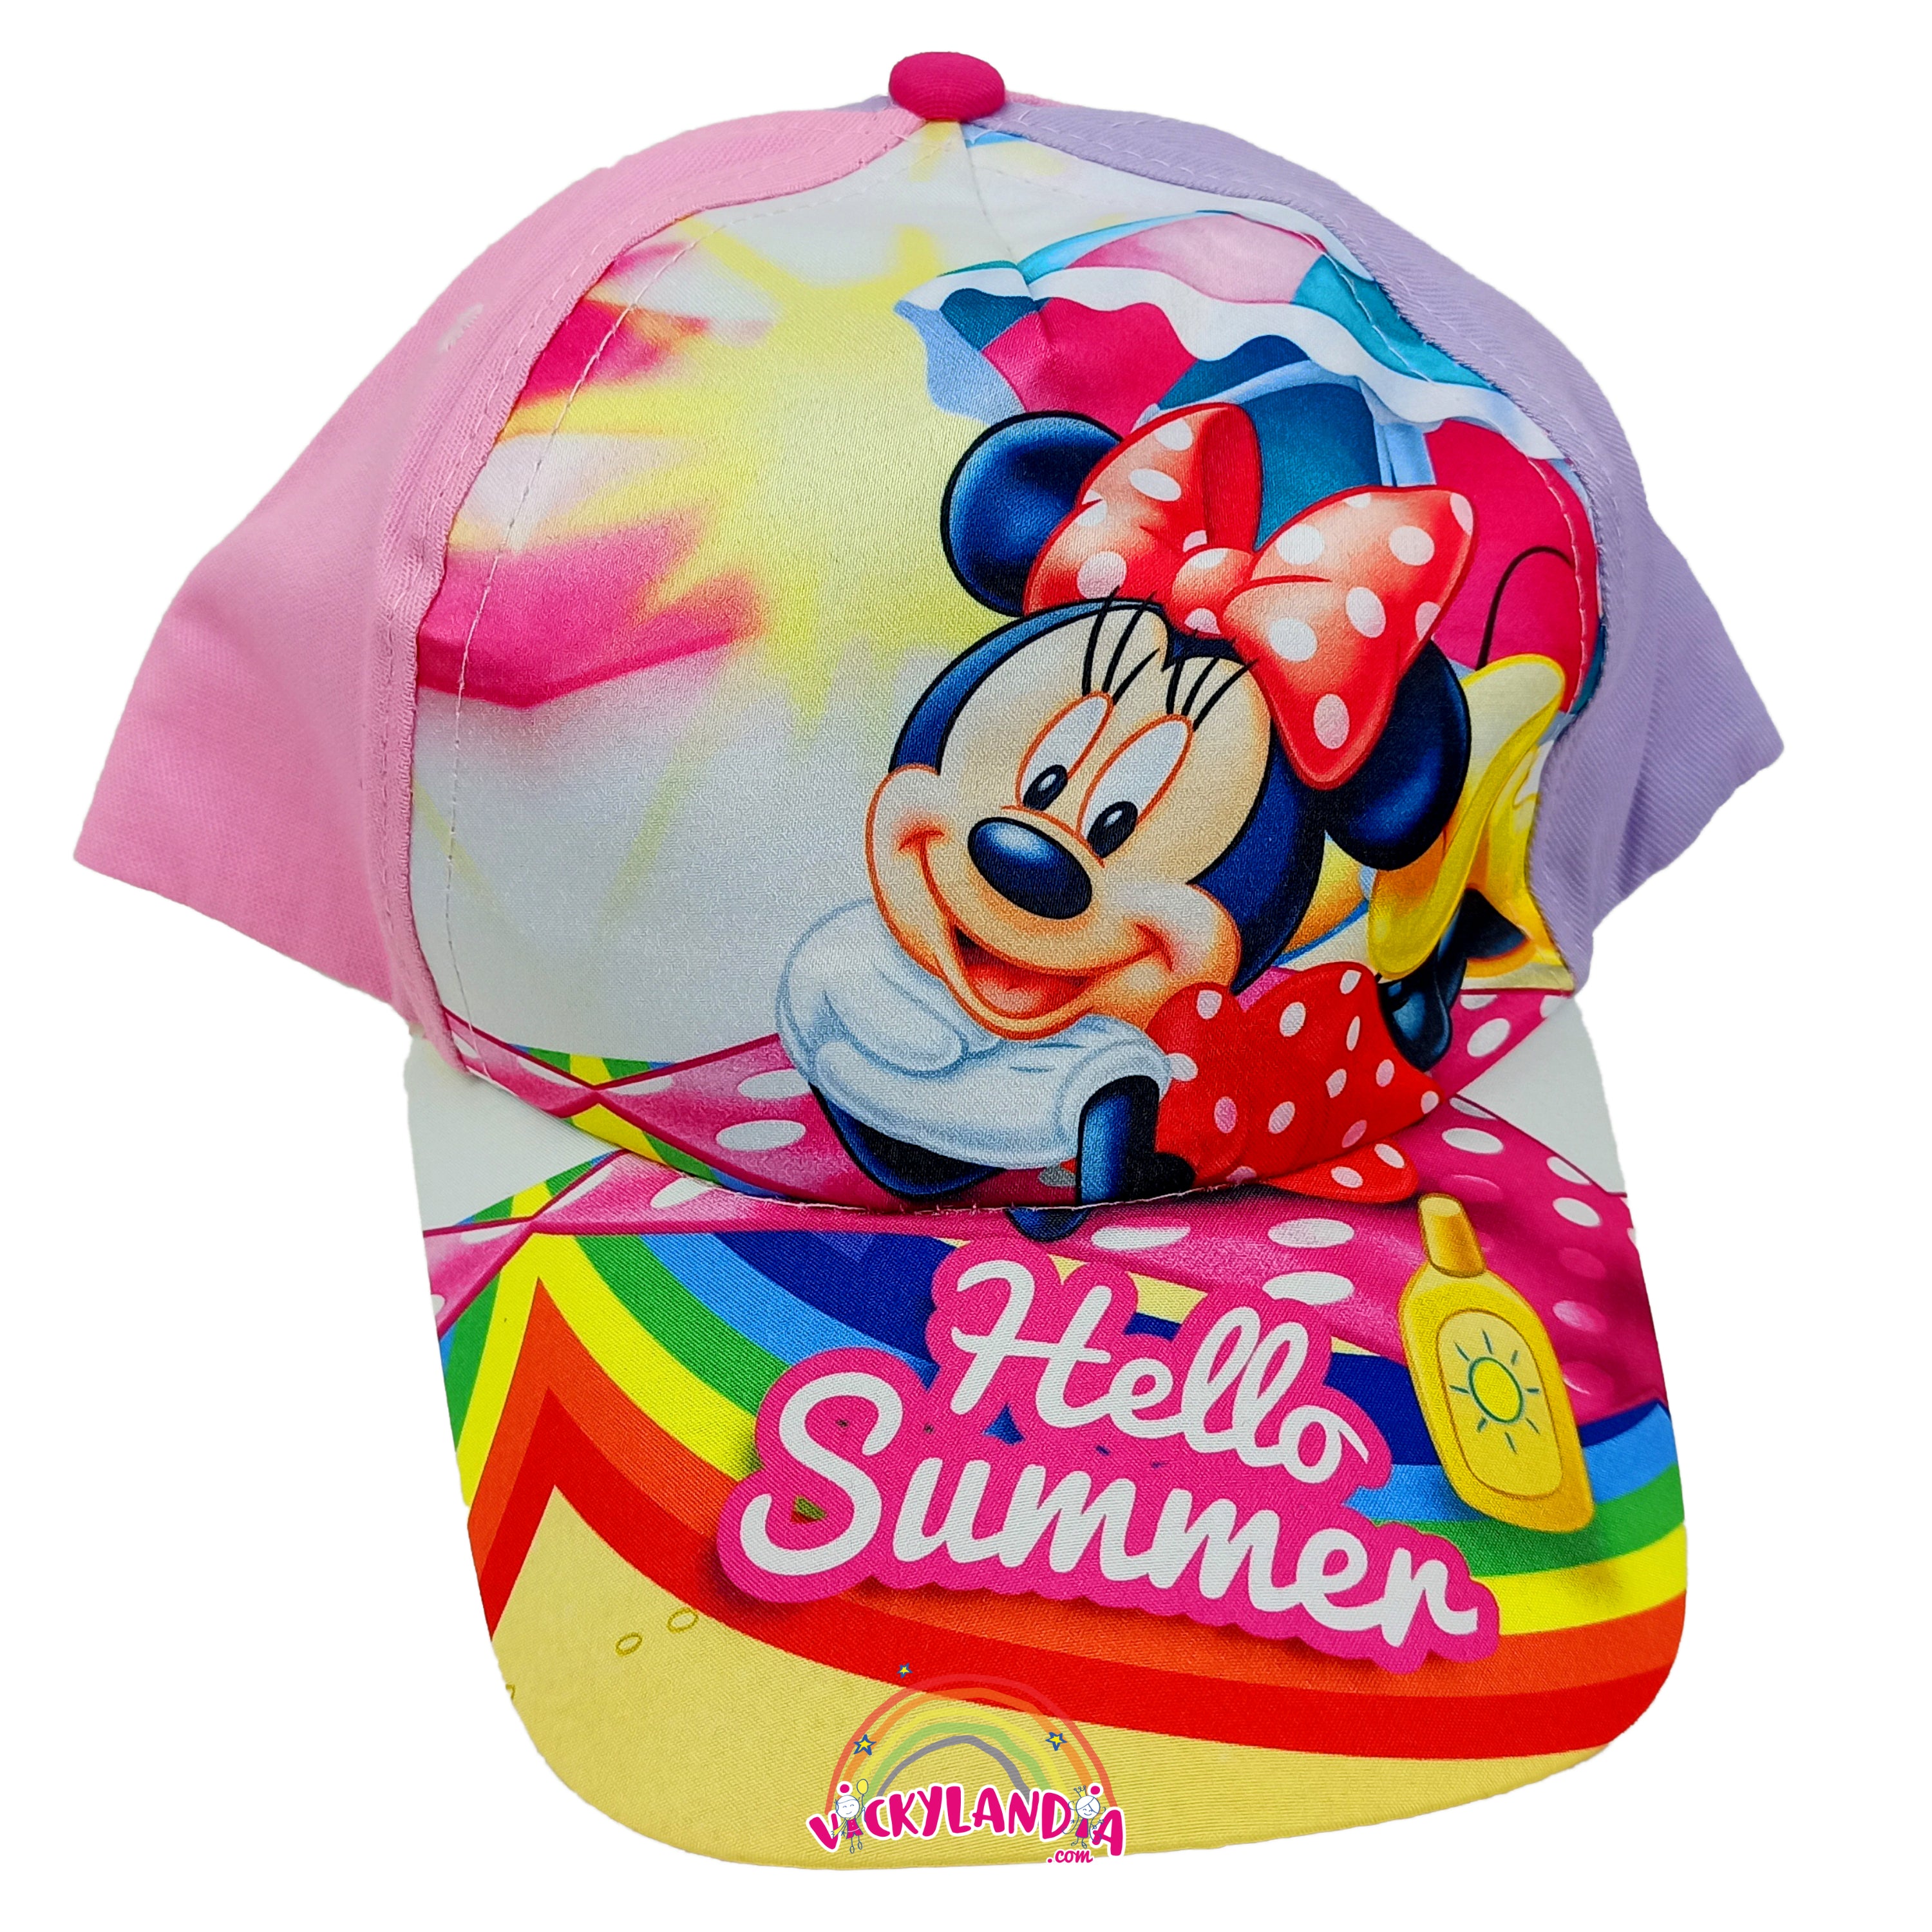 Conjunto de Minnie Mouse gorra y gafas de sol Disney Vickylandia